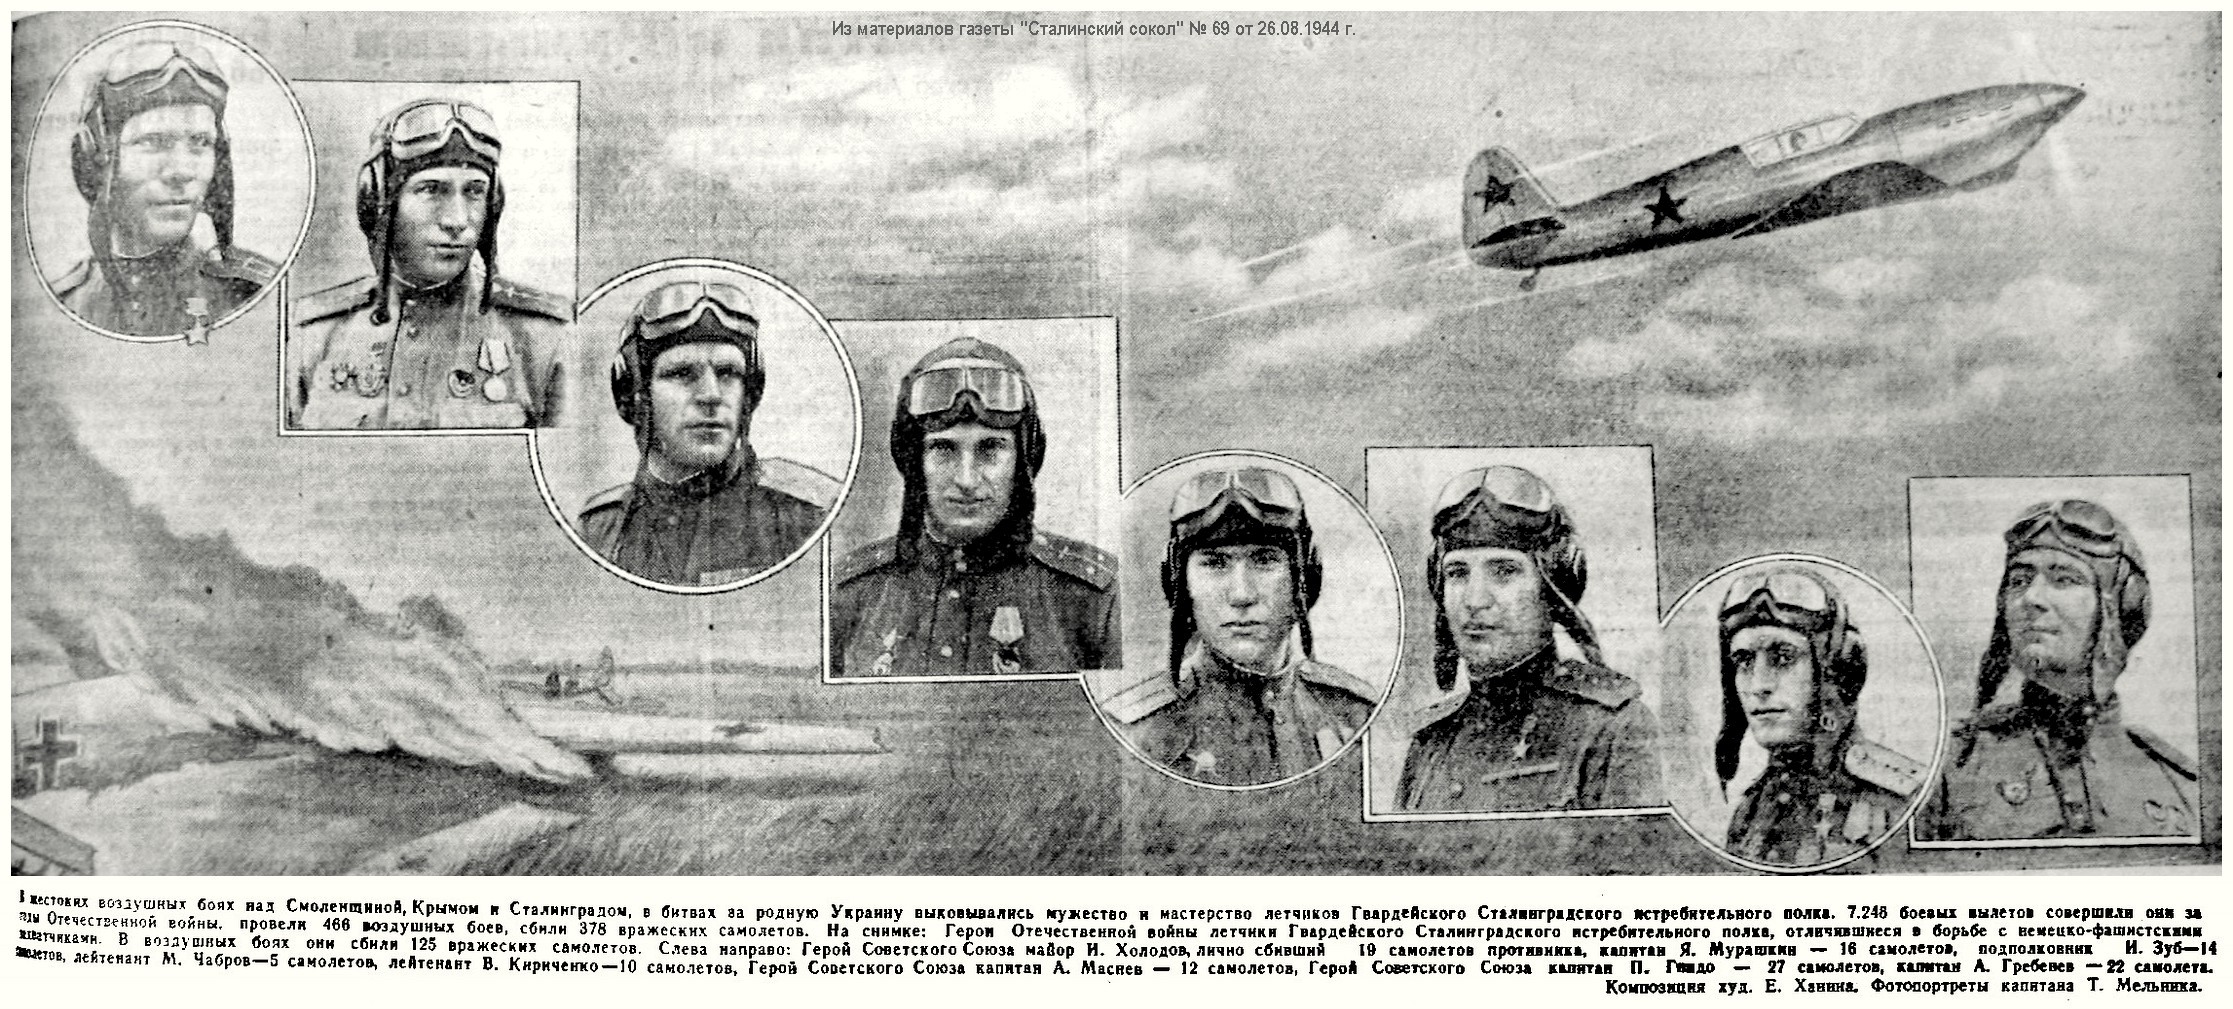 Из материалов военных лет о А. Д. Гребенёве, 1944 г.